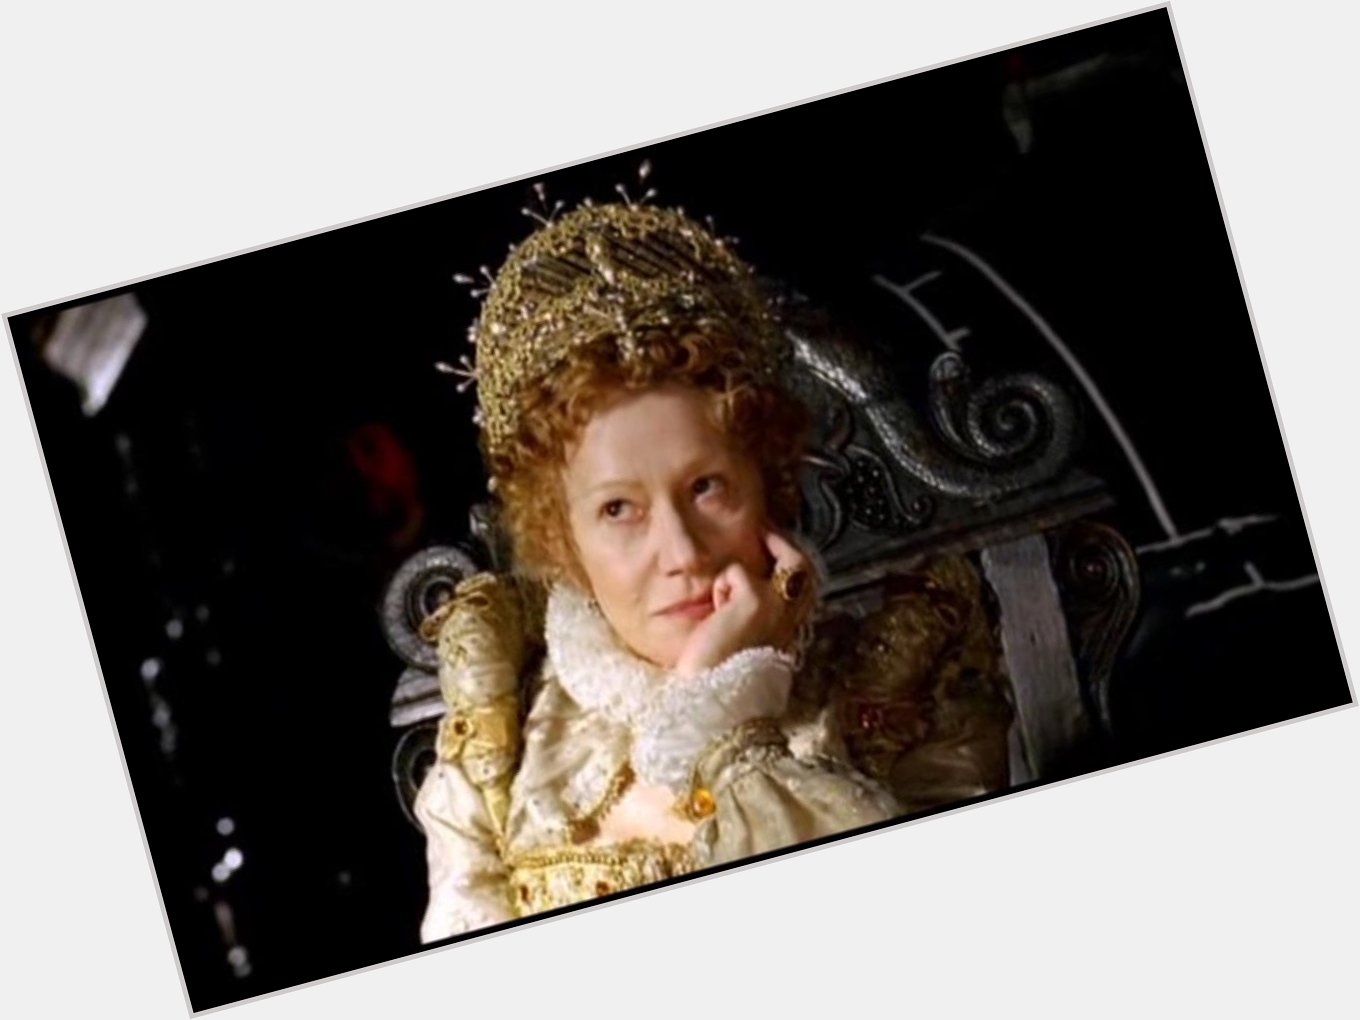 Happy birthday Helen Mirren! We love her historical costume movie roles so much -  